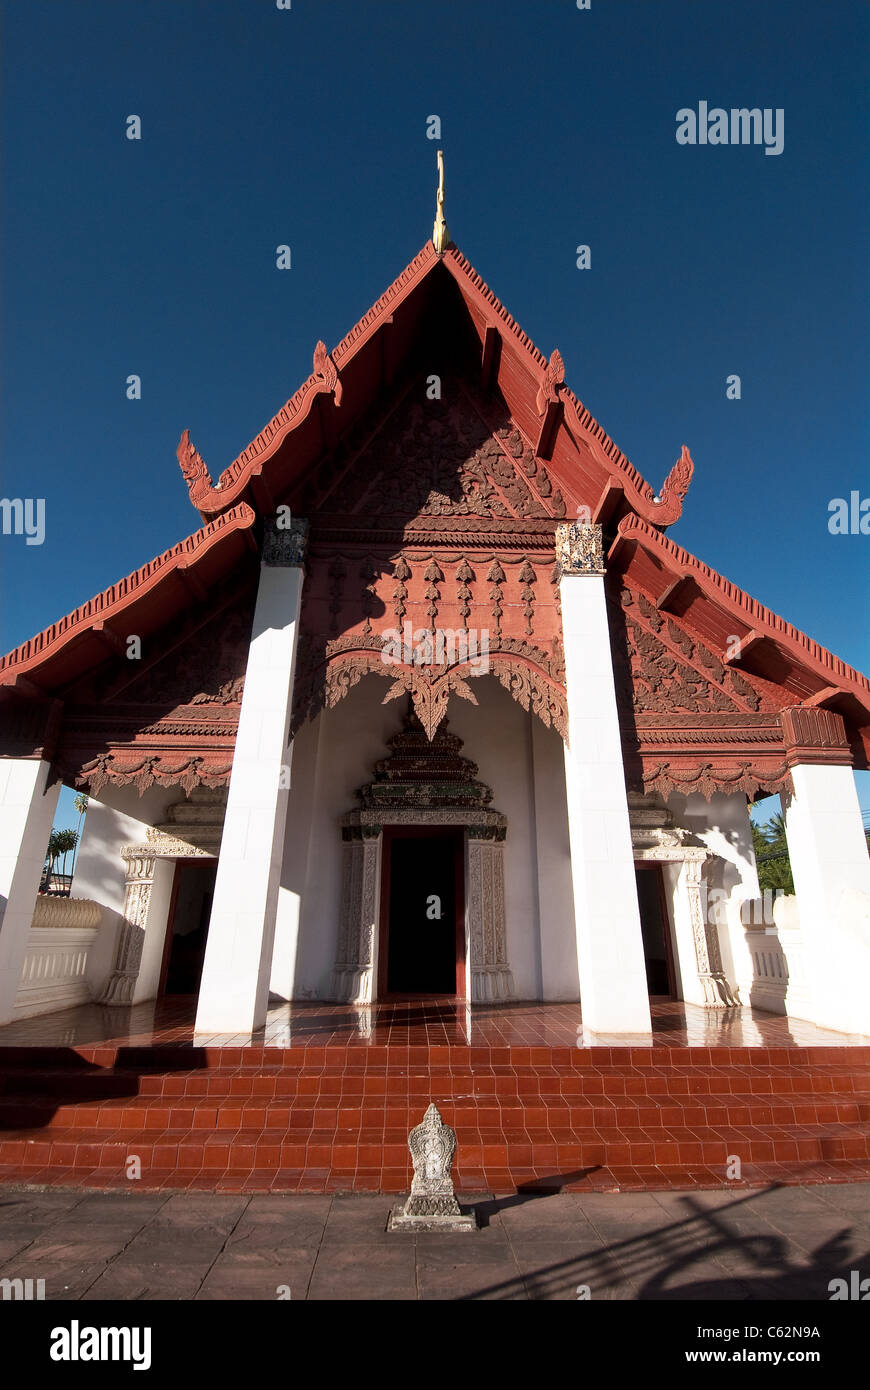 Wat Hua Khuang. Nan. Northern Thailand. Stock Photo